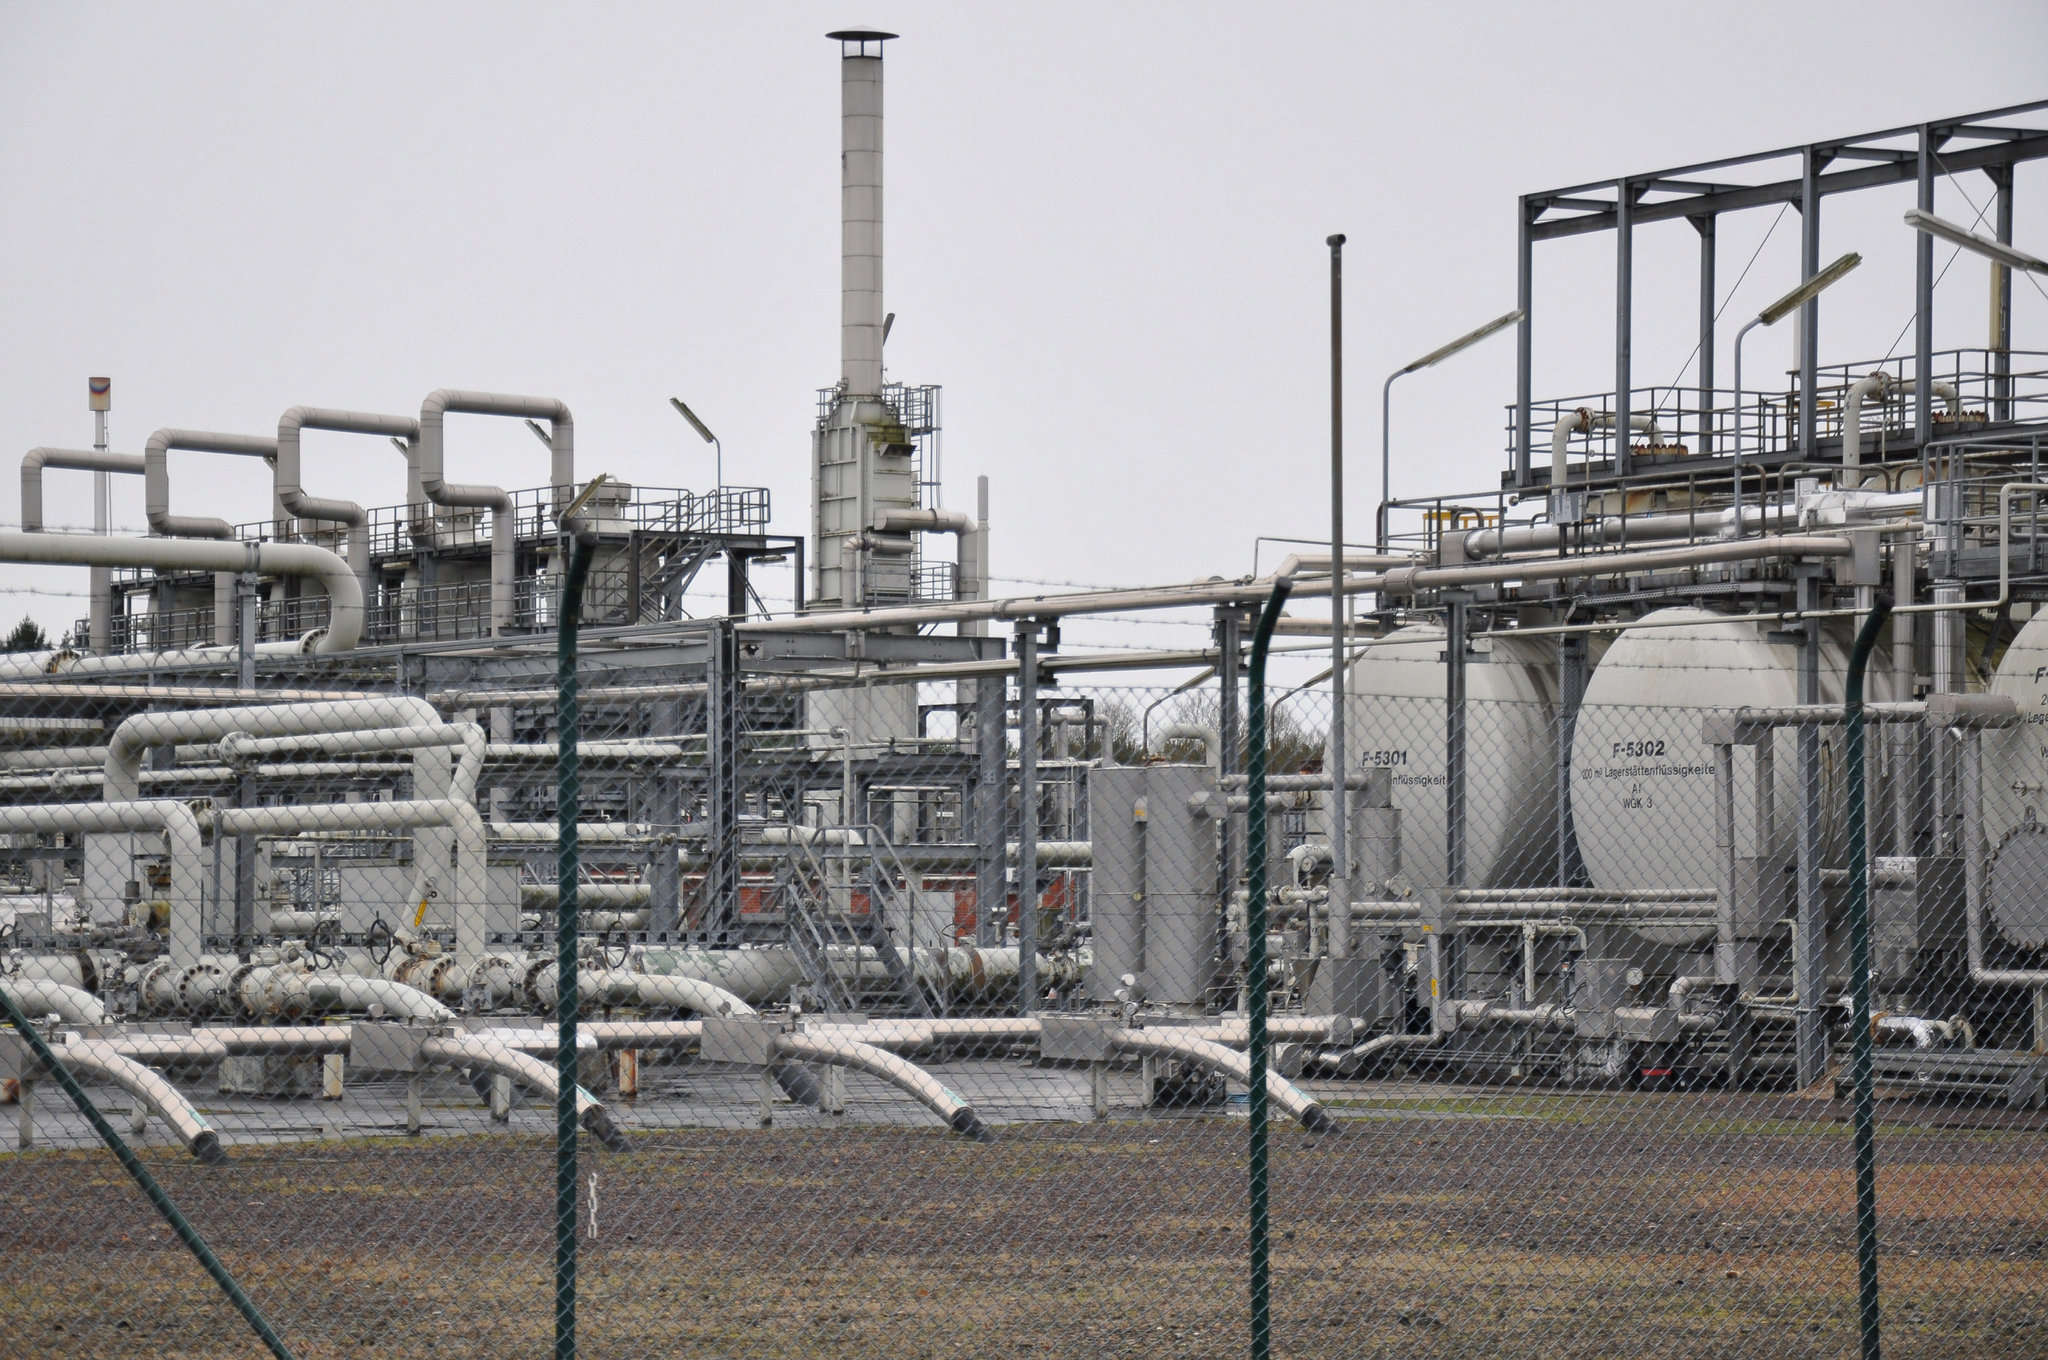 Betriebsplatz der Firma Exxon in Bellen: Gabriele Hornhardt fordert in ihrem Antrag, eine Umweltverträglichkeitsprüfung für die geplante Reststoffbehandlungsanlage durchzuführen.